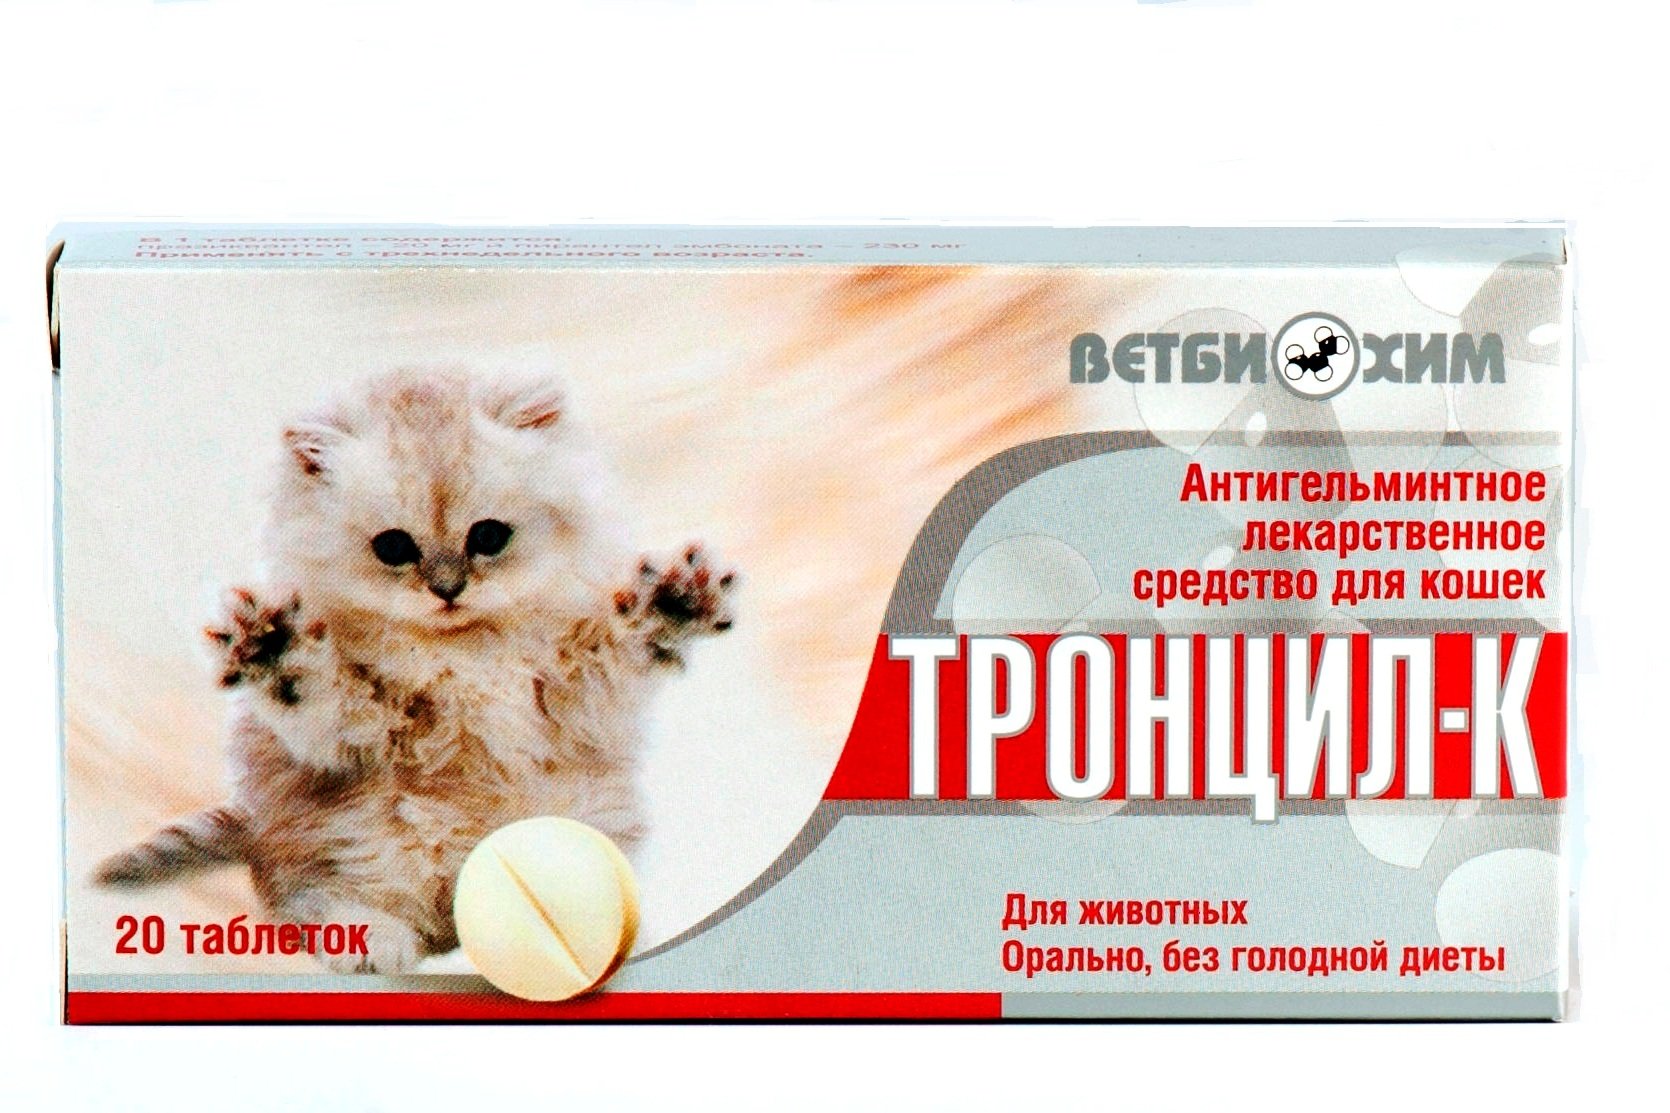 Голодное лекарство. Глистогонные препараты для кошек таблетки. Тронцил-к для кошек. Противоглистное средство для кошек. Таблетки для живота.